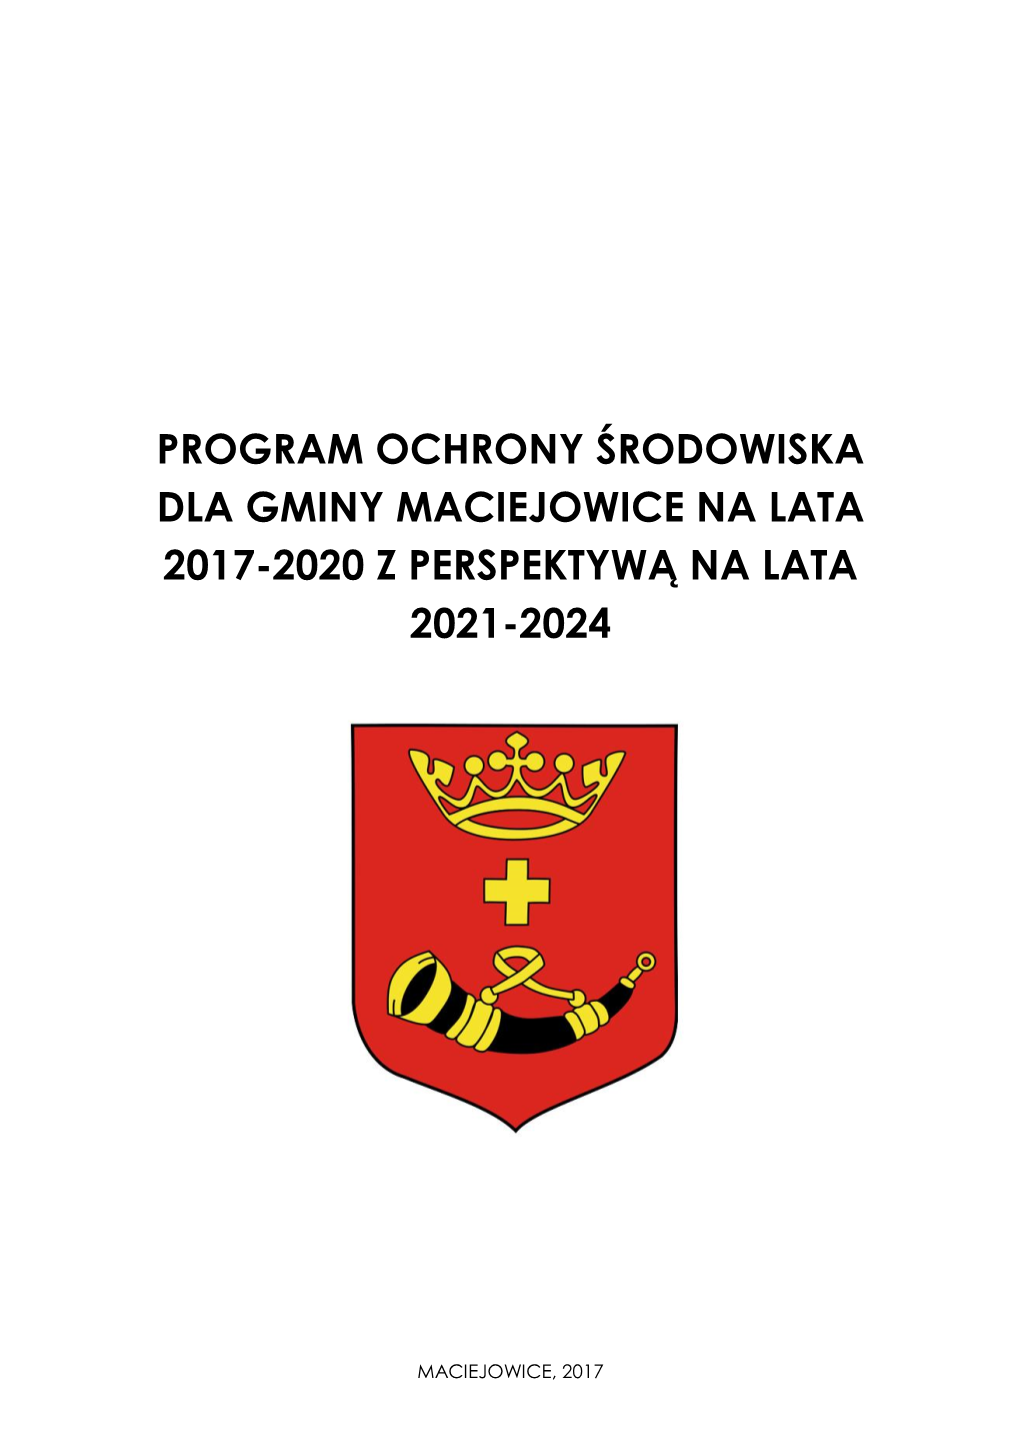 Program Ochrony Środowiska Dla Gminy Maciejowice Na Lata 2017-2020 Z Perspektywą Na Lata 2021-2024